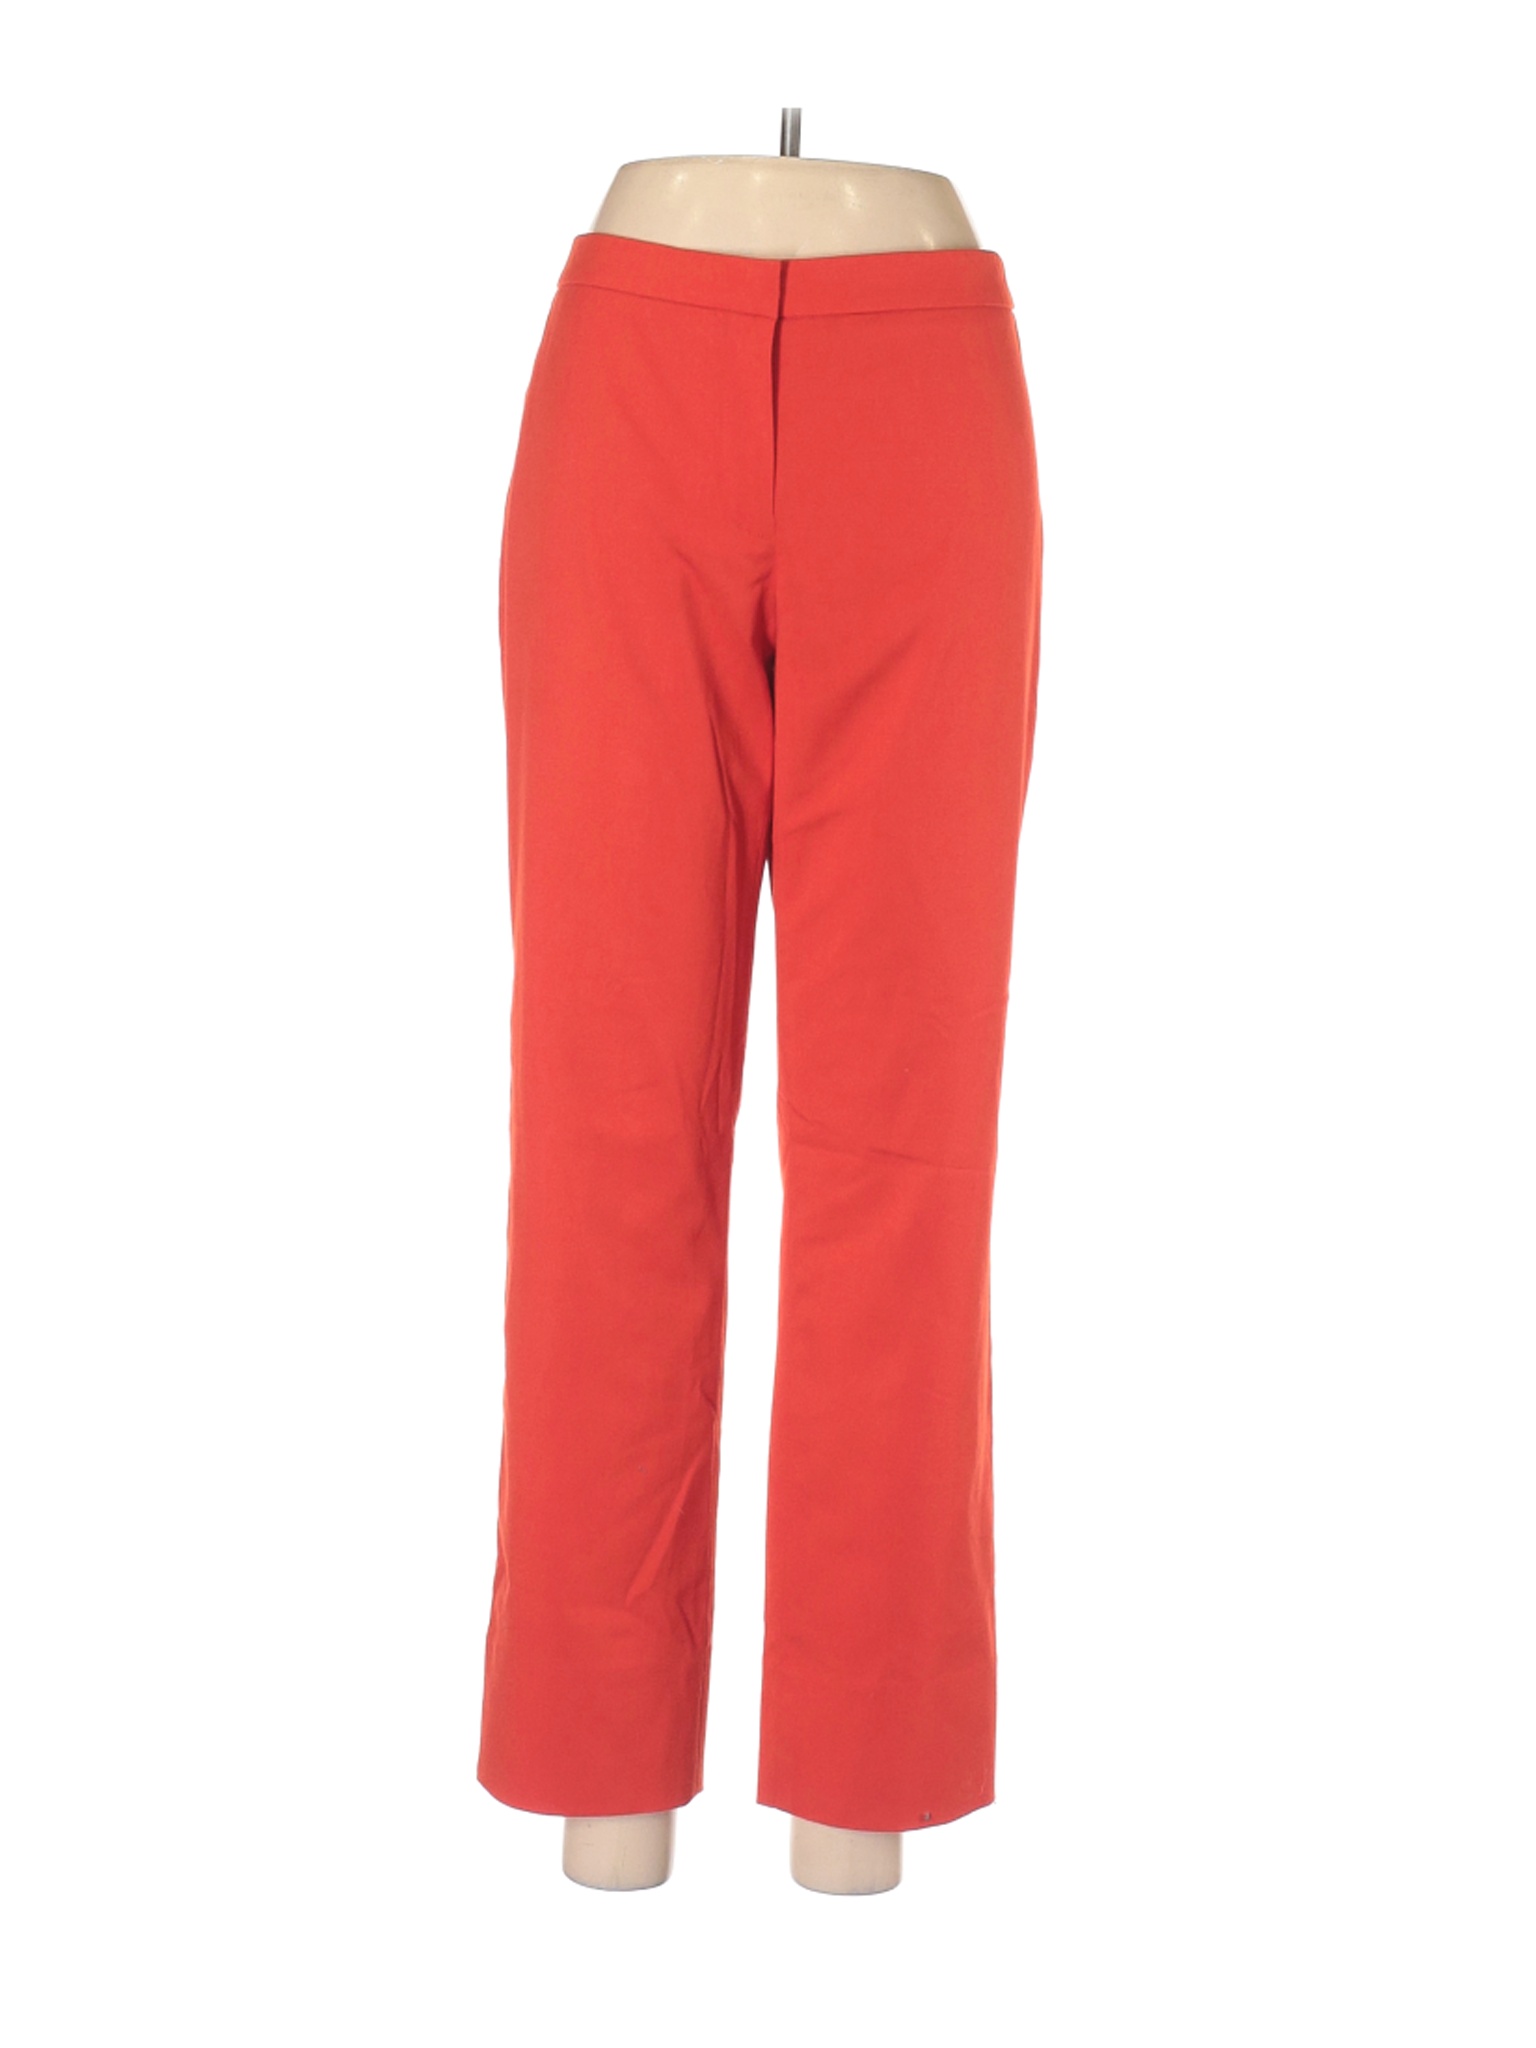 W by Worth Women Orange Dress Pants 8 | eBay